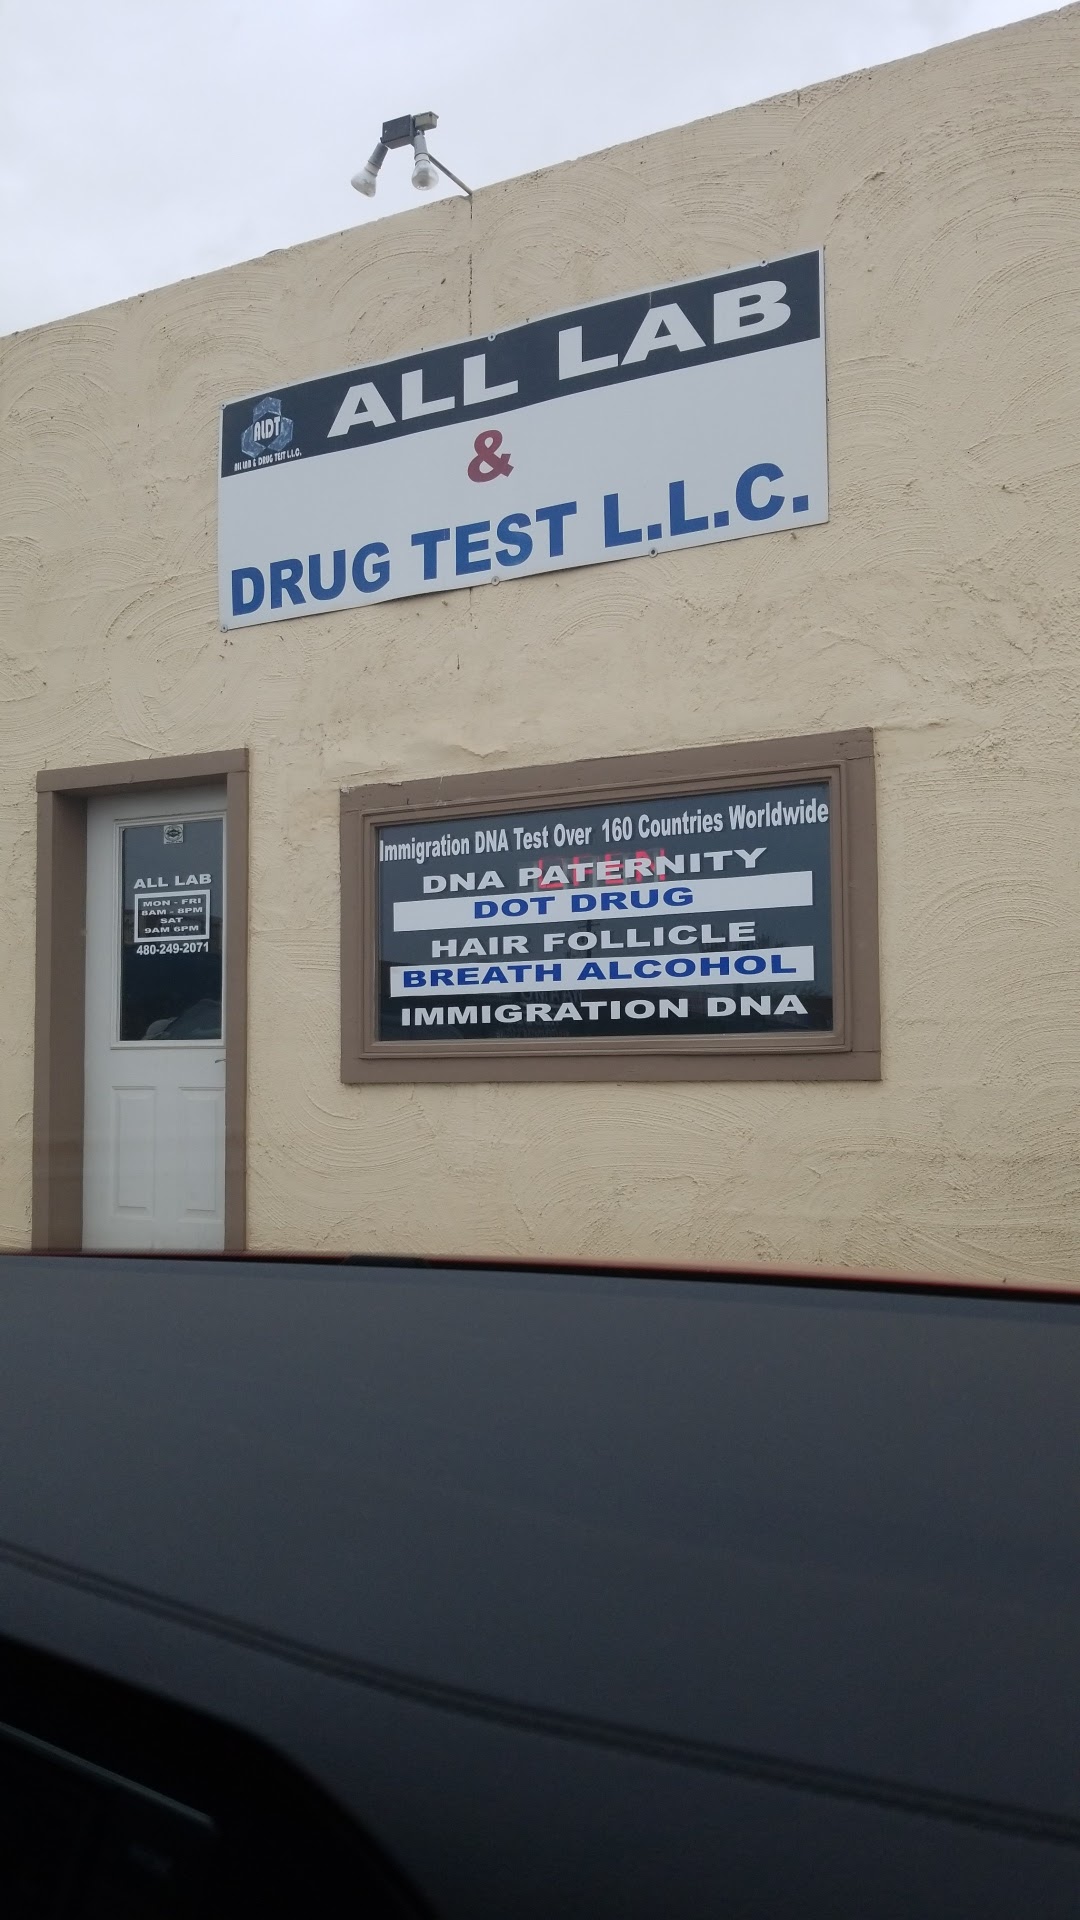 All Lab Drug Test LLC